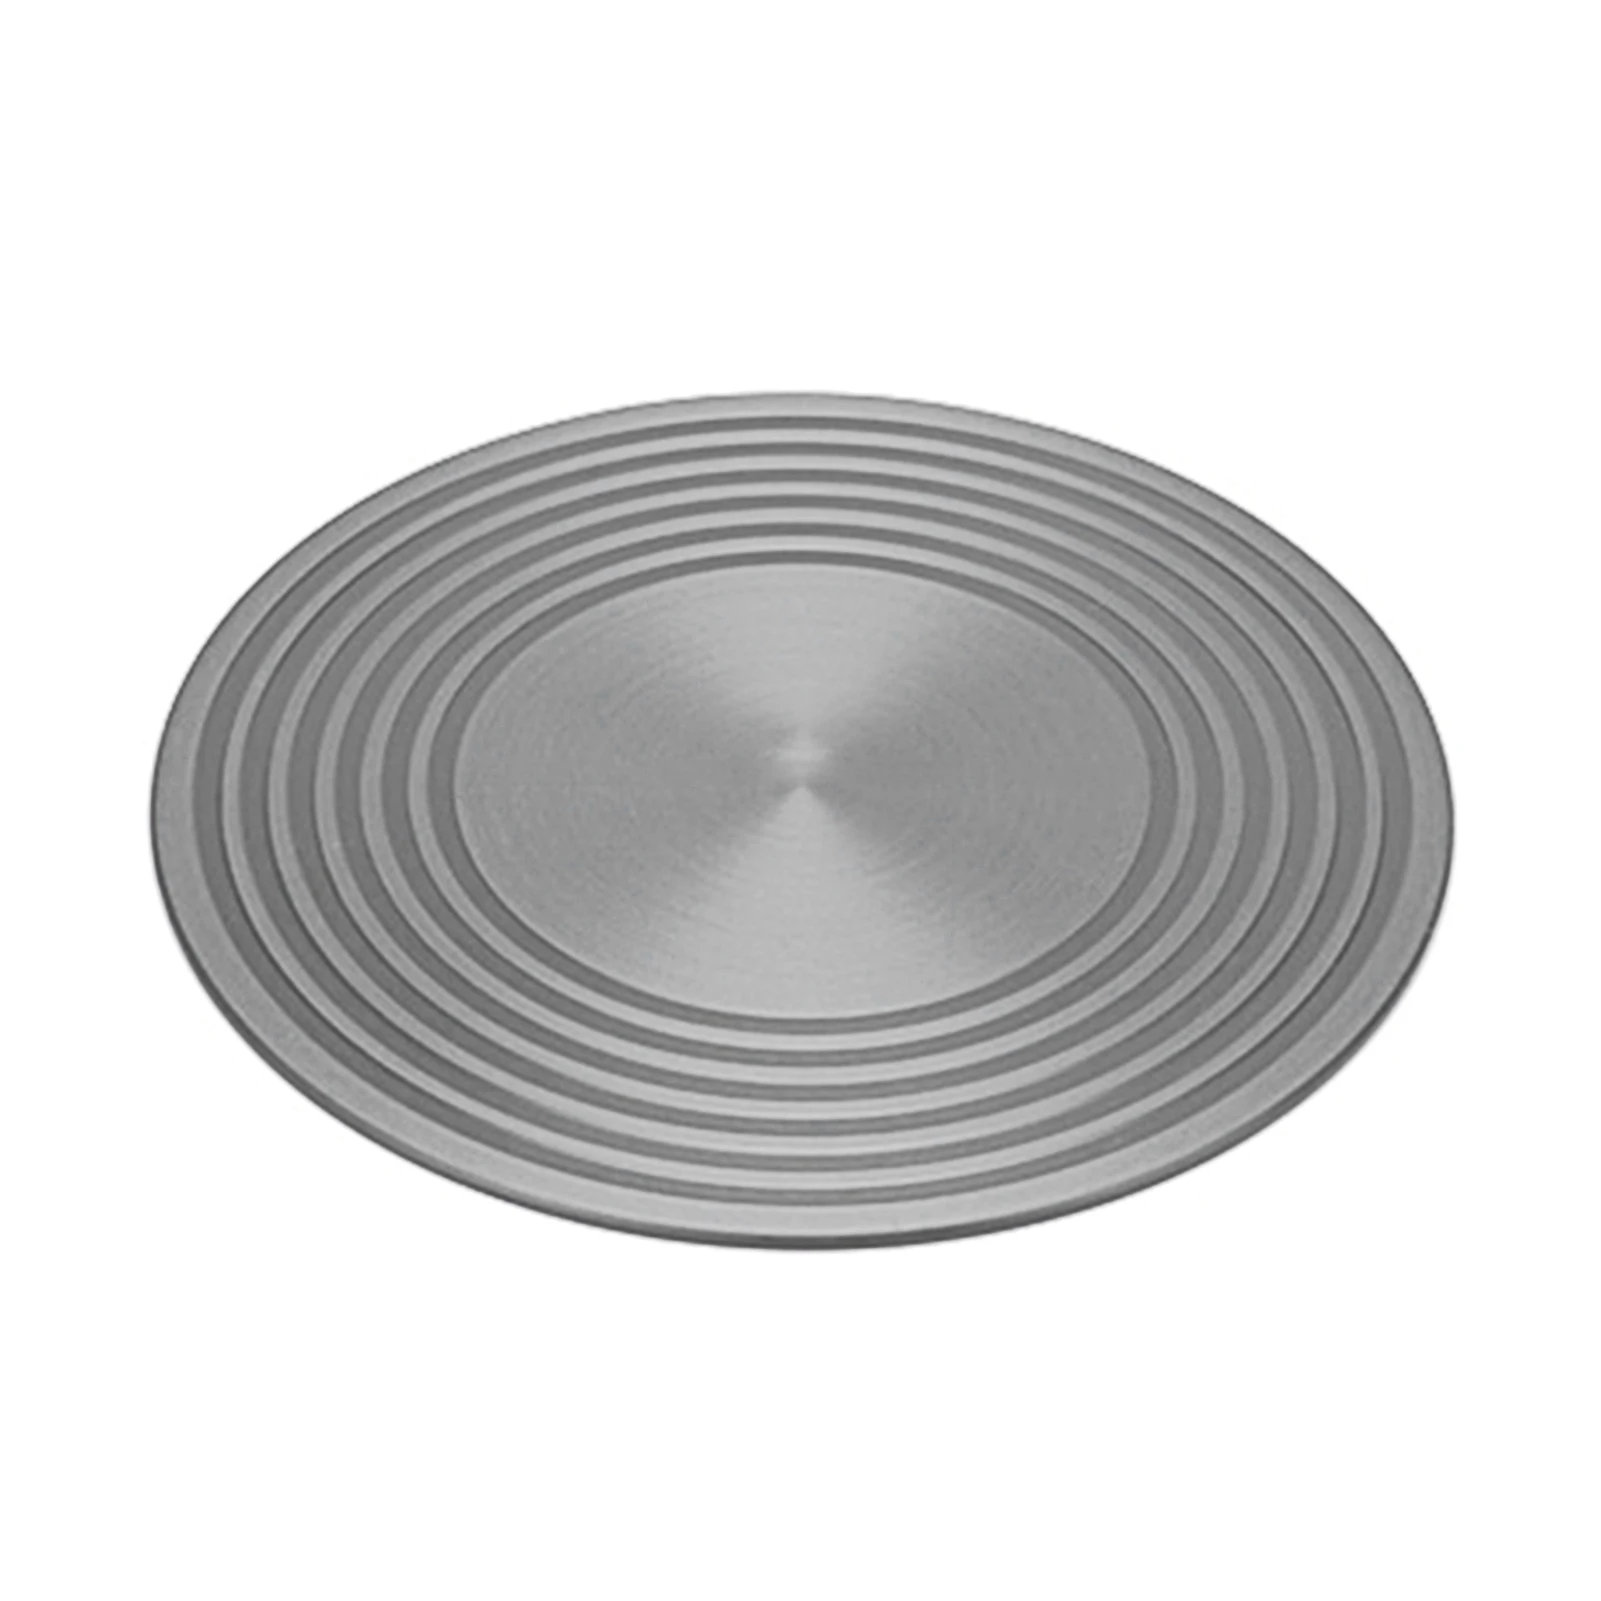 

Защитная посуда для газовой плиты, энергосберегающая кухонная утварь с рассеивателем тепла, утолщенная варочная панель из авиационного алюминия